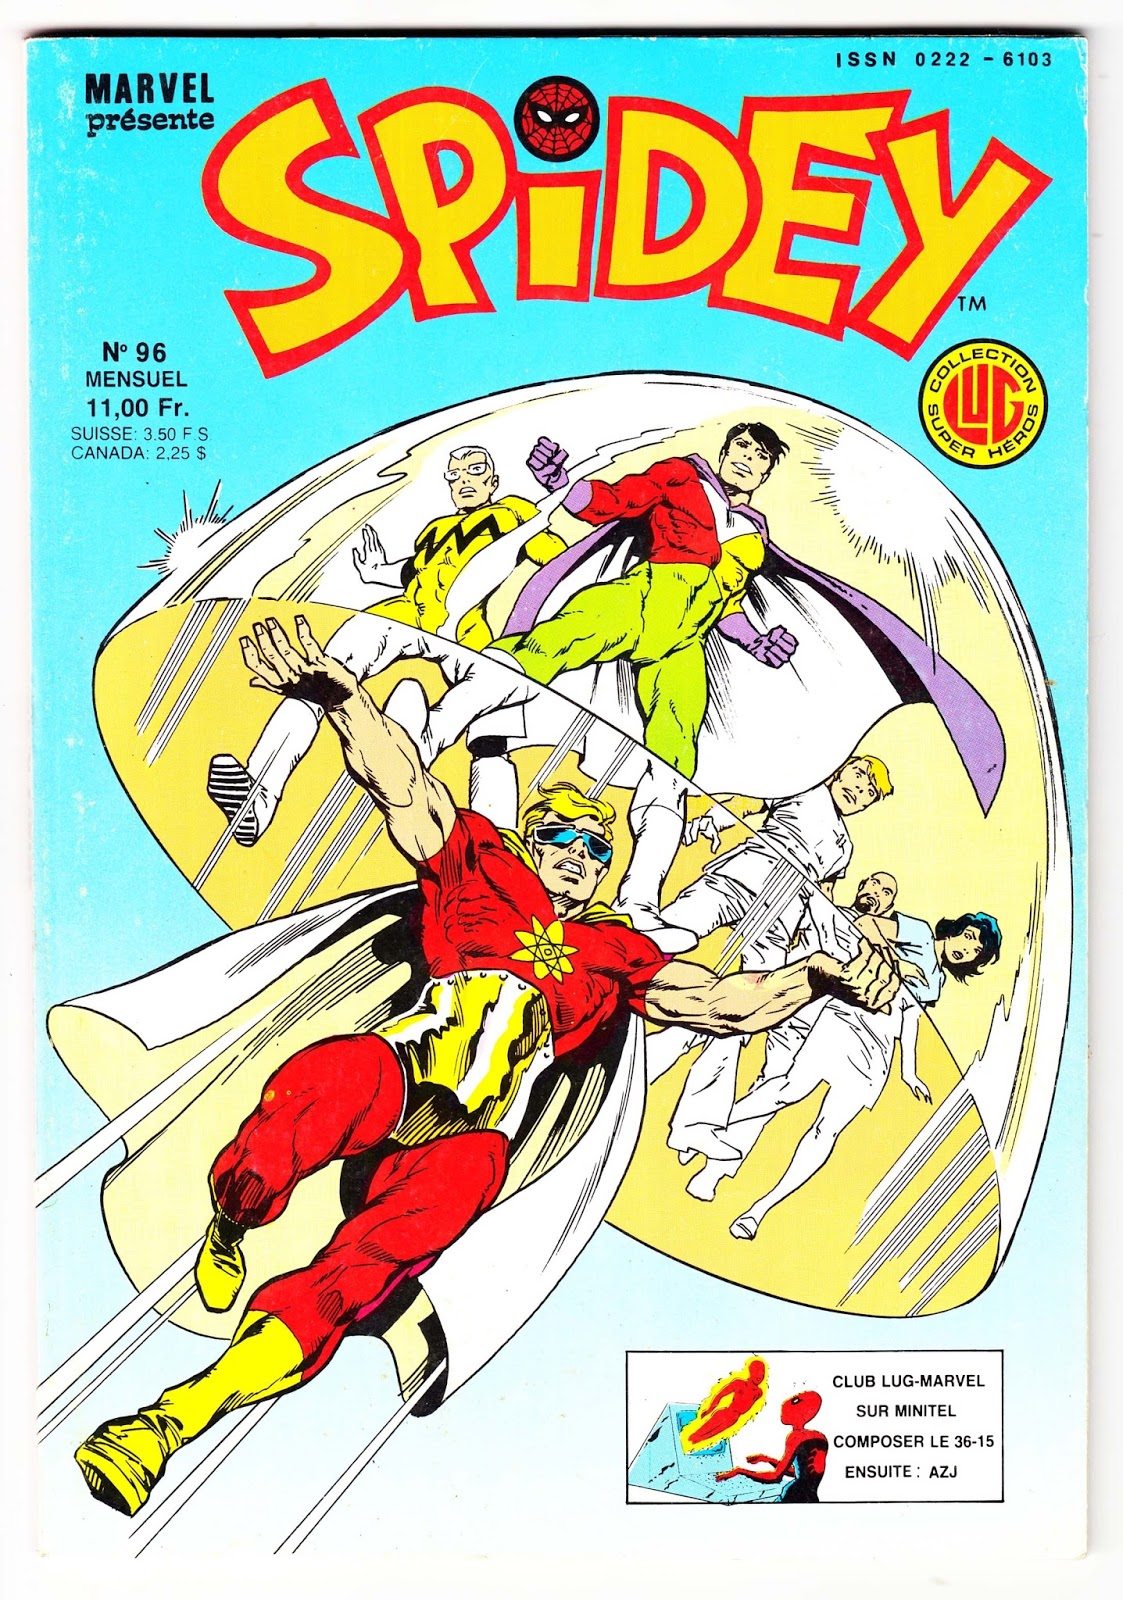 25 - Les comics que vous lisez en ce moment - Page 4 Spidey-n-96-comics-marvel